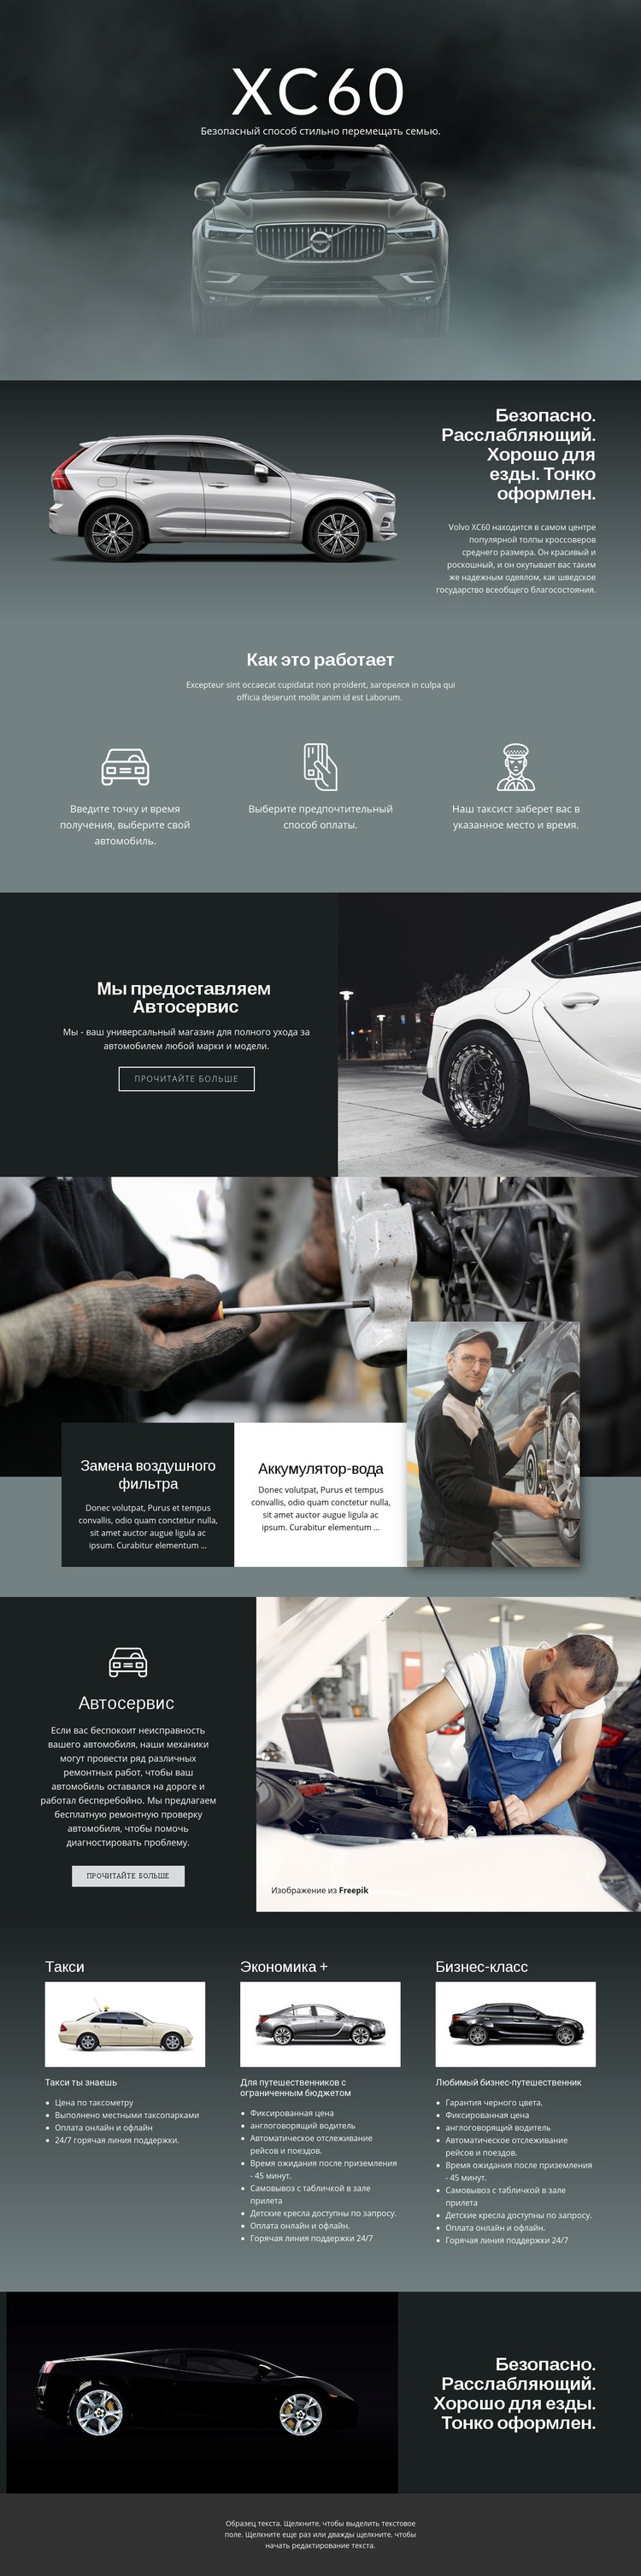 Volvo XC60 внедорожник Дизайн сайта